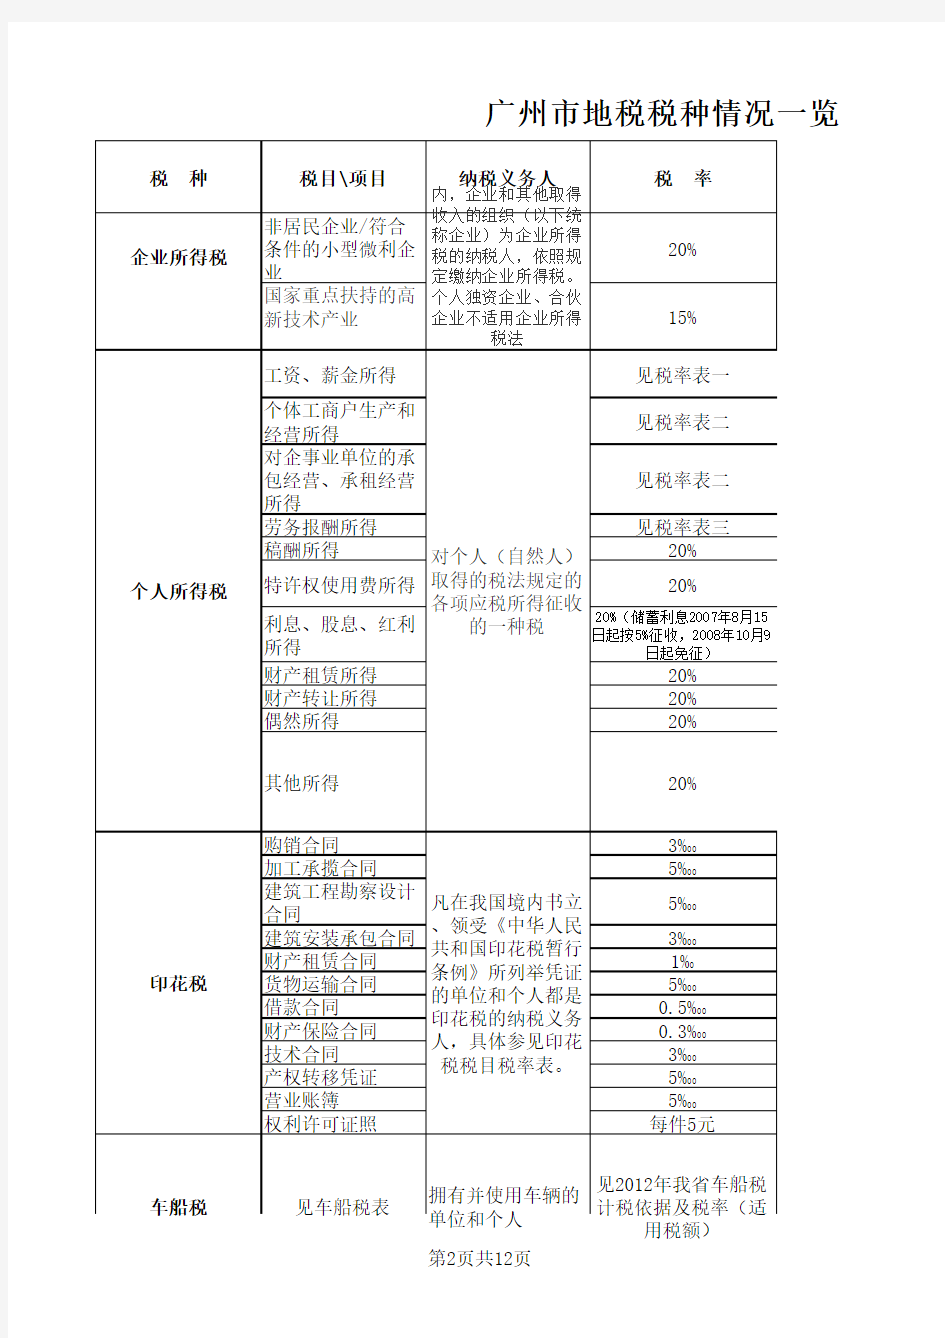 广州市地方税种一览表(新)